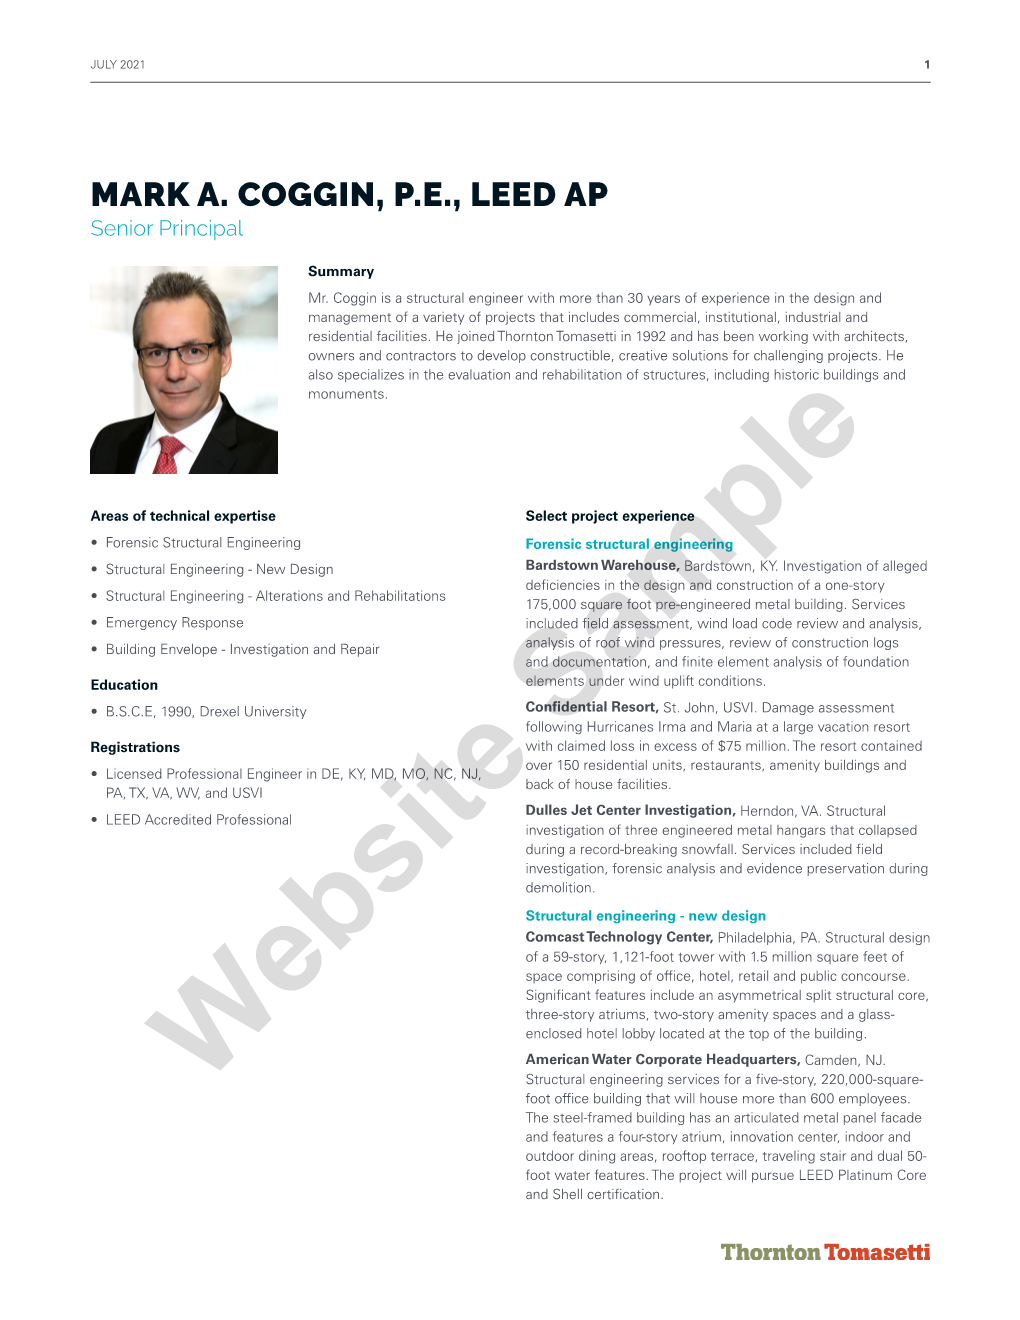 MARK A. COGGIN, P.E., LEED AP Senior Principal